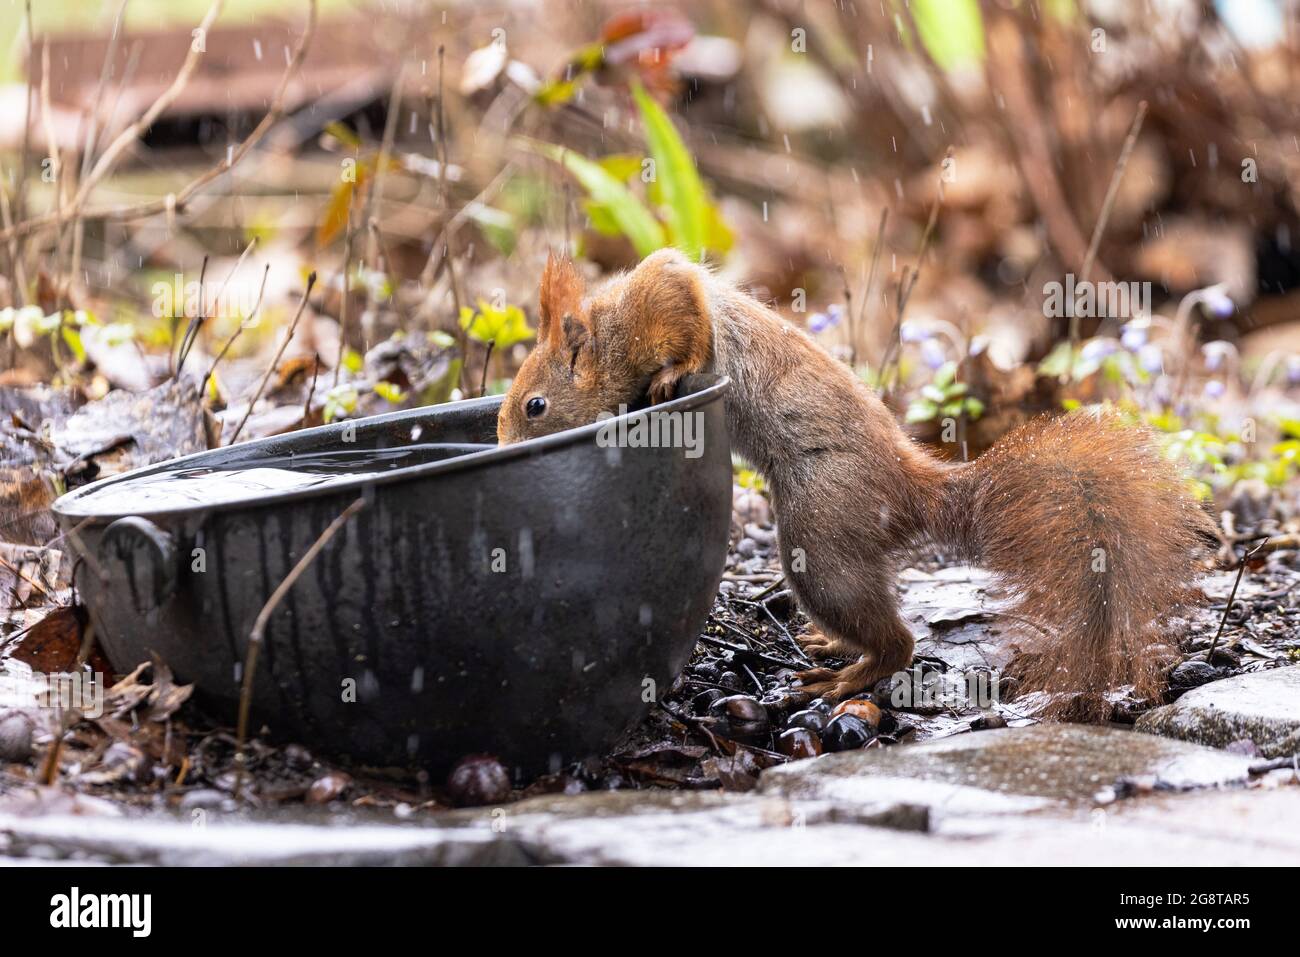 Europäisches rotes Eichhörnchen, eurasisches rotes Eichhörnchen (Sciurus vulgaris), trinken aus einer alten Schüssel im Garten, Deutschland, Bayern Stockfoto